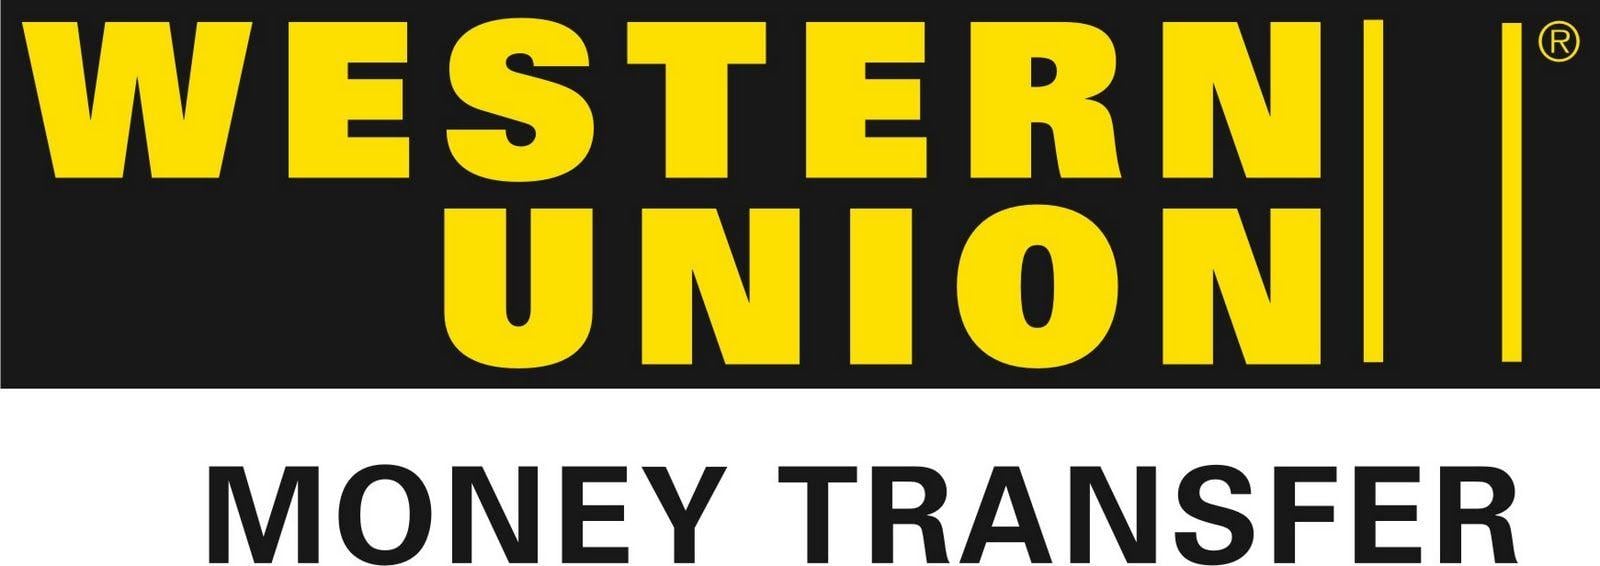 Western Union Logo - Western union Logos